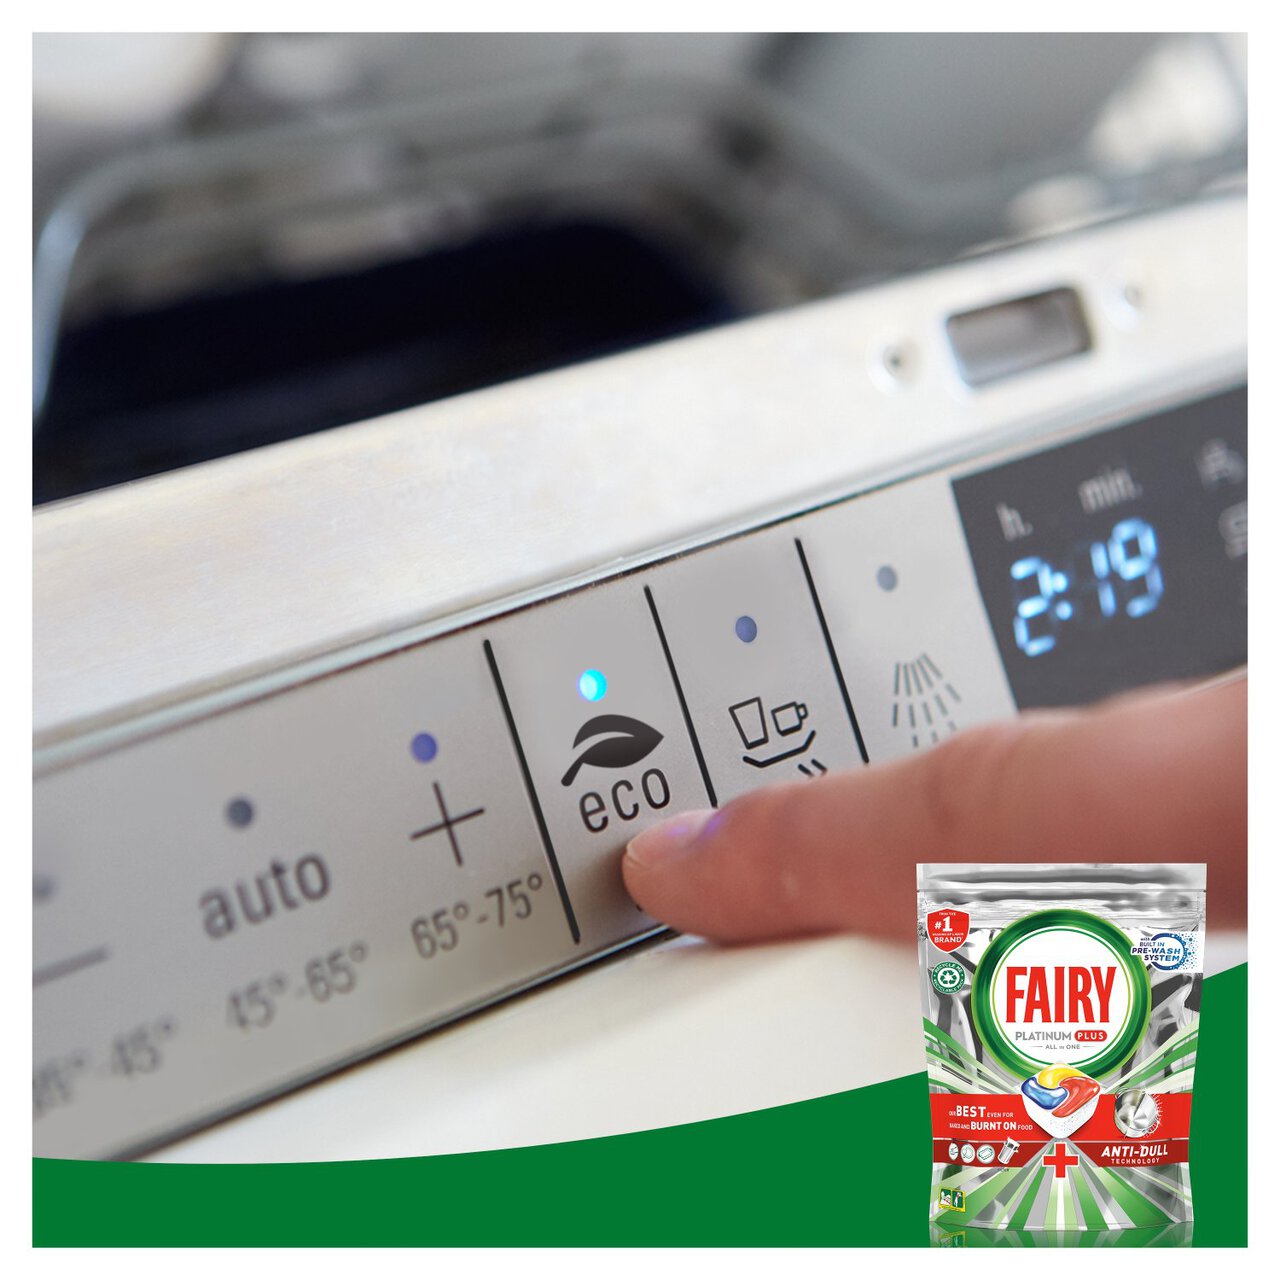 Fairy Platinum Plus Anti Dull Lemon Dishwasher Tablets 93 per pack